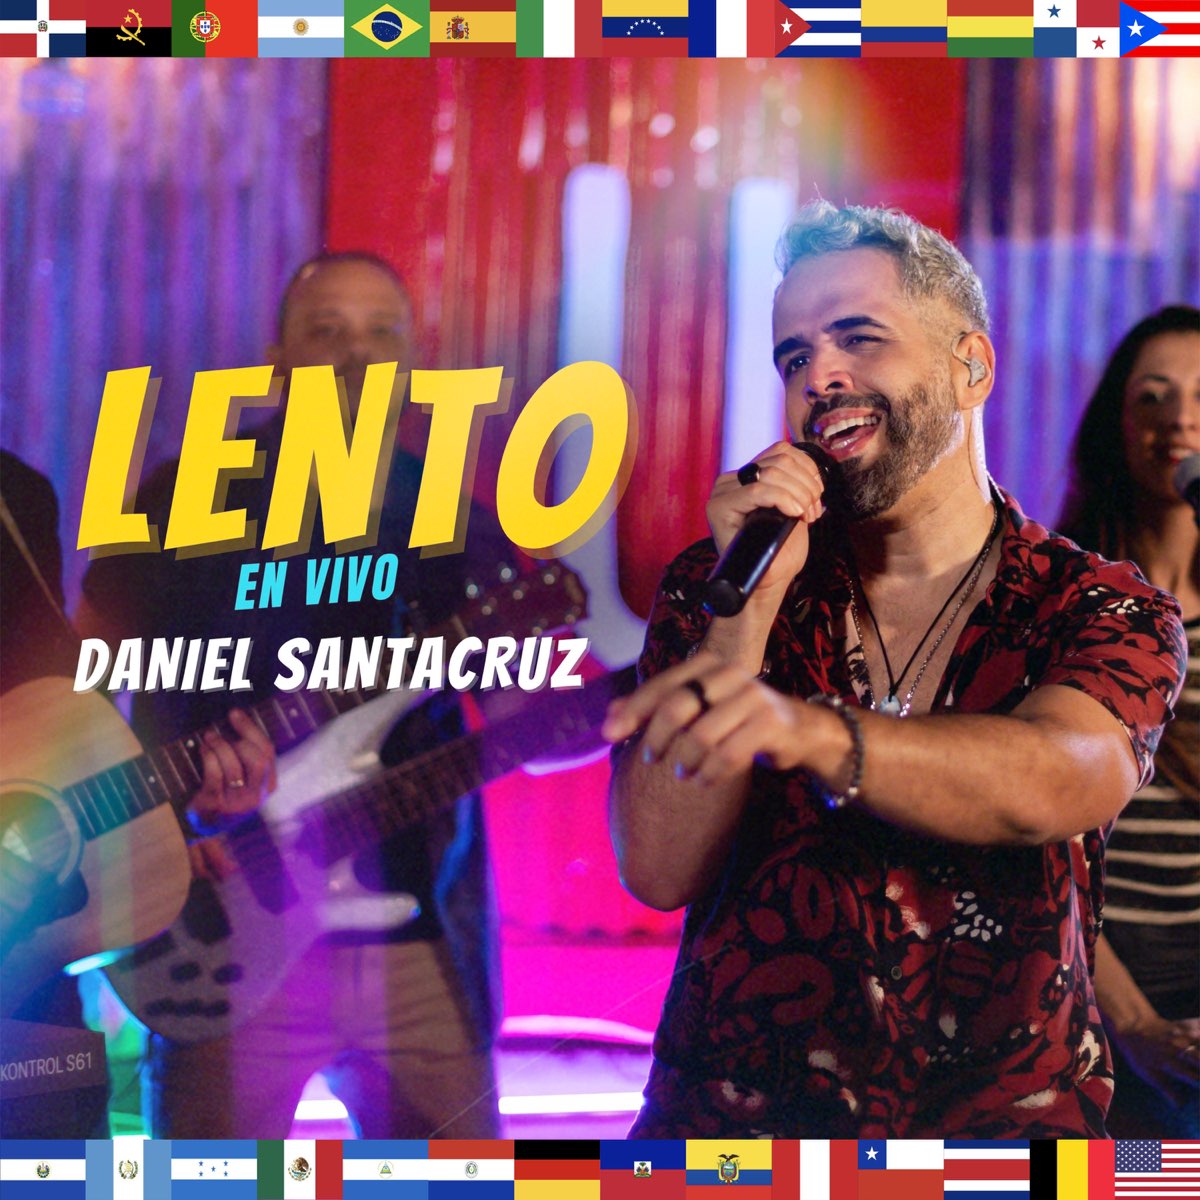 Lento (En Vivo) - Single - Album by Daniel Santacruz - Apple Music